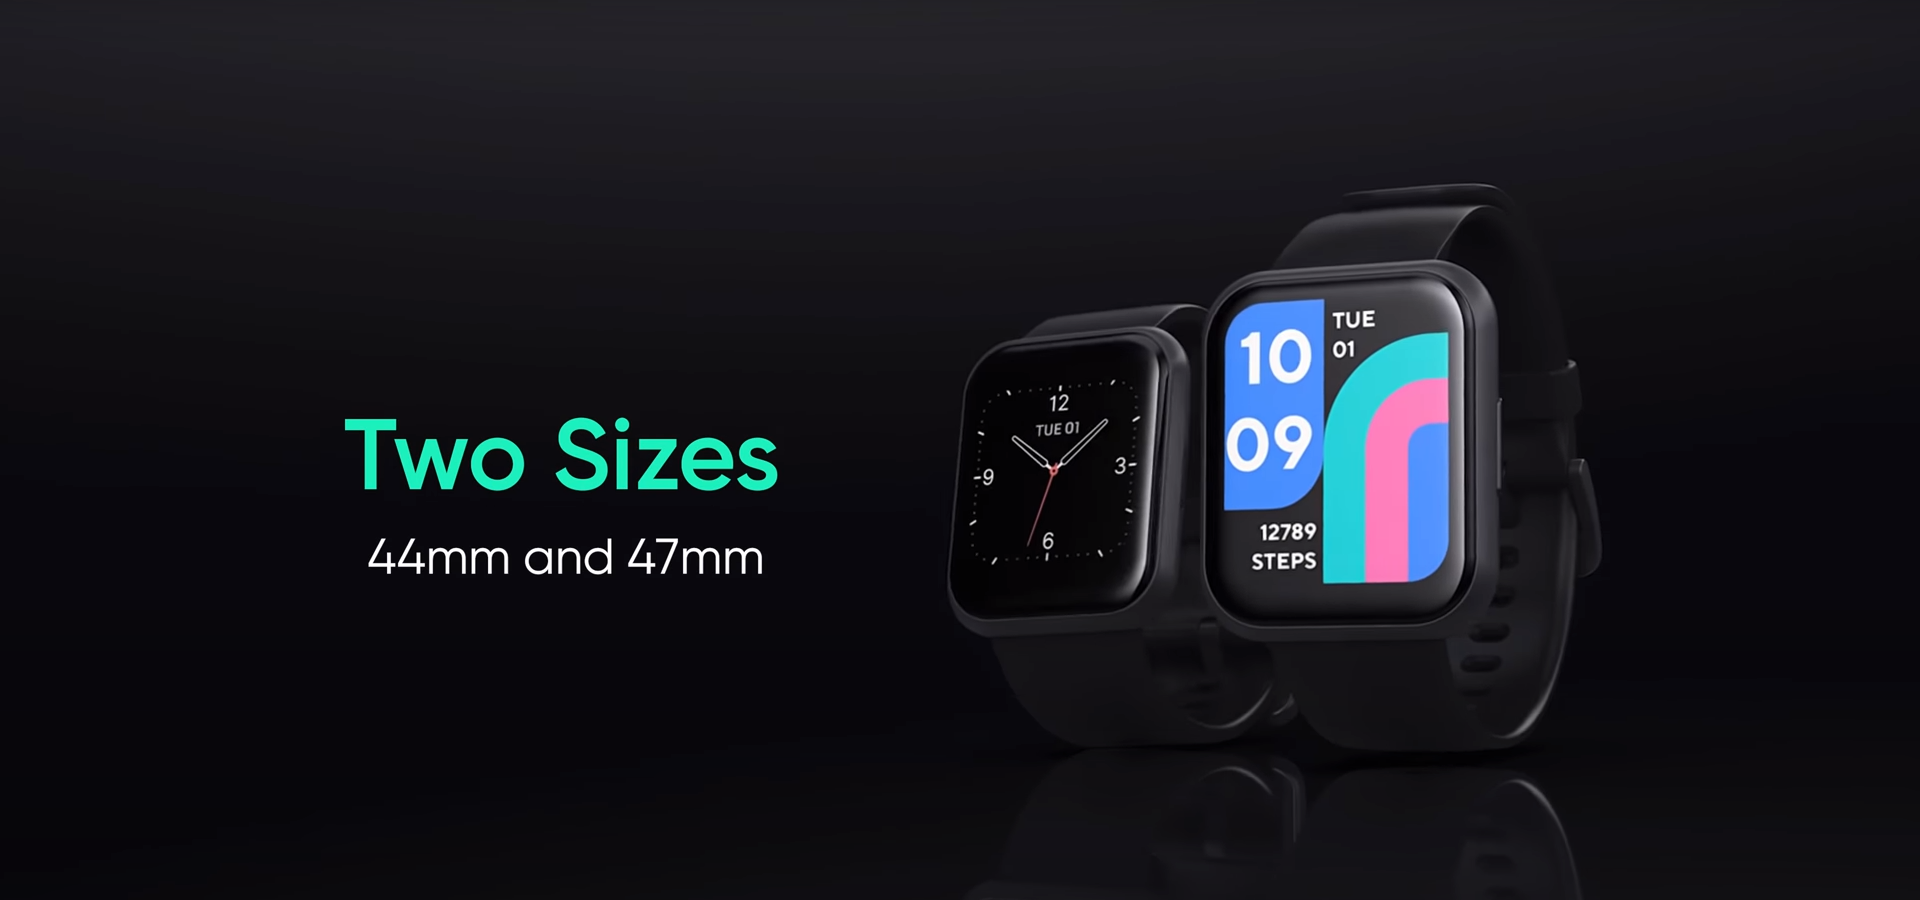 two sizes s - Wyze sta rilasciando uno smartwatch da $ 20 con una durata della batteria di nove giorni